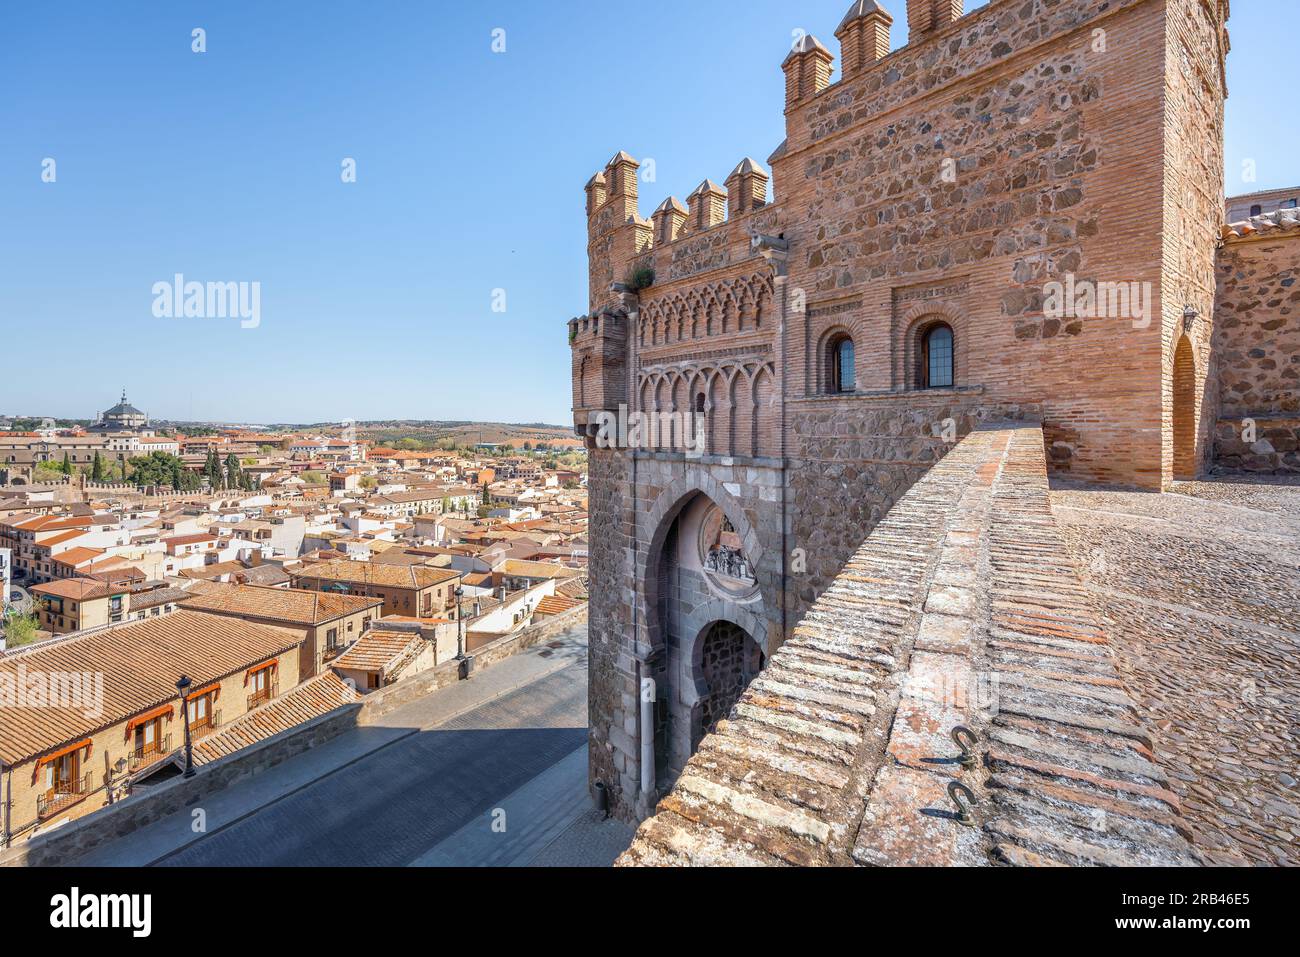 Puerta del Sol Gate - Toledo, Spain Stock Photo